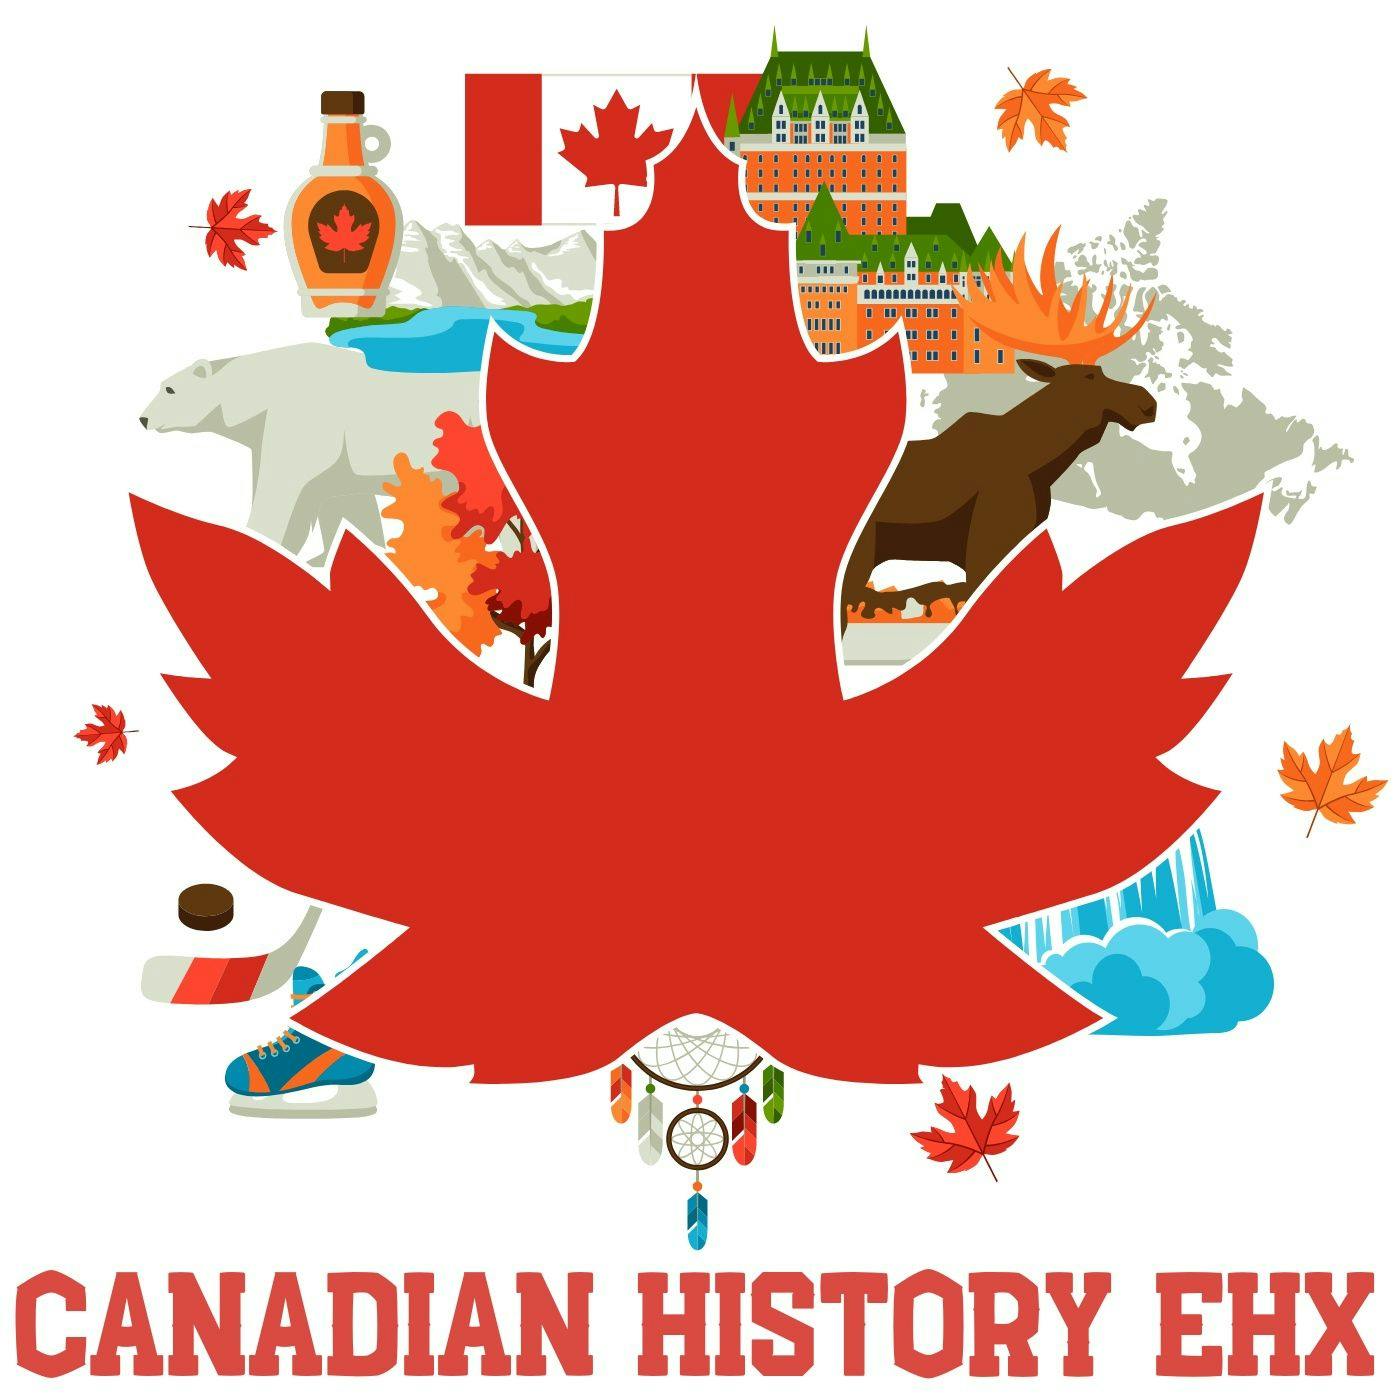 Canada Year-By-Year: 1894